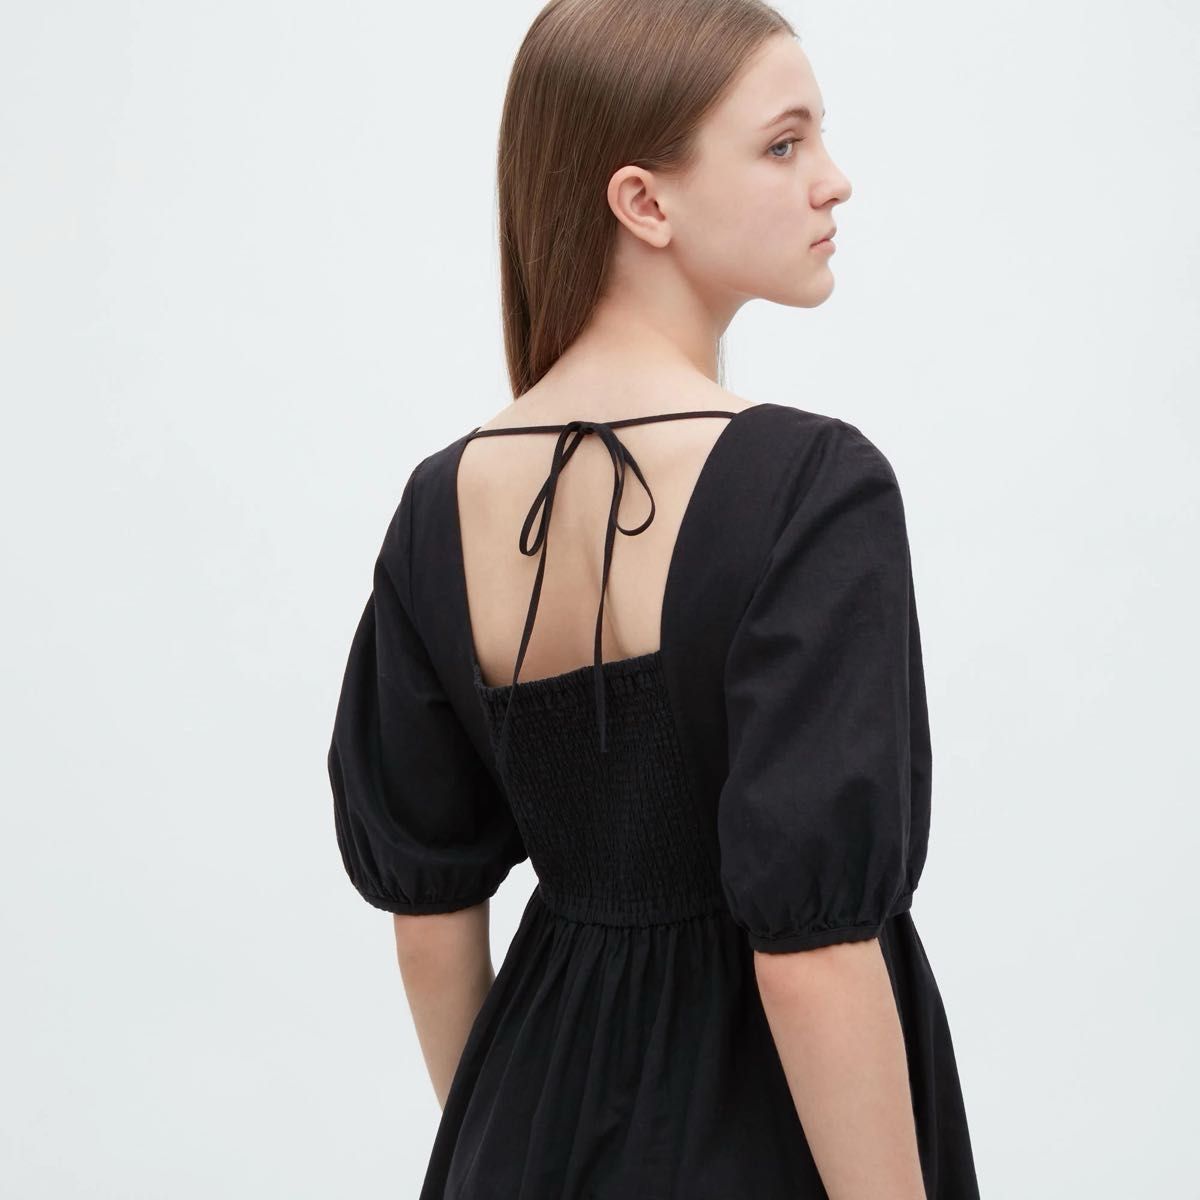 新品 ユニクロ リネンブレンドシャーリングワンピース リゾートドレス 麻綿素材 半袖 黒色